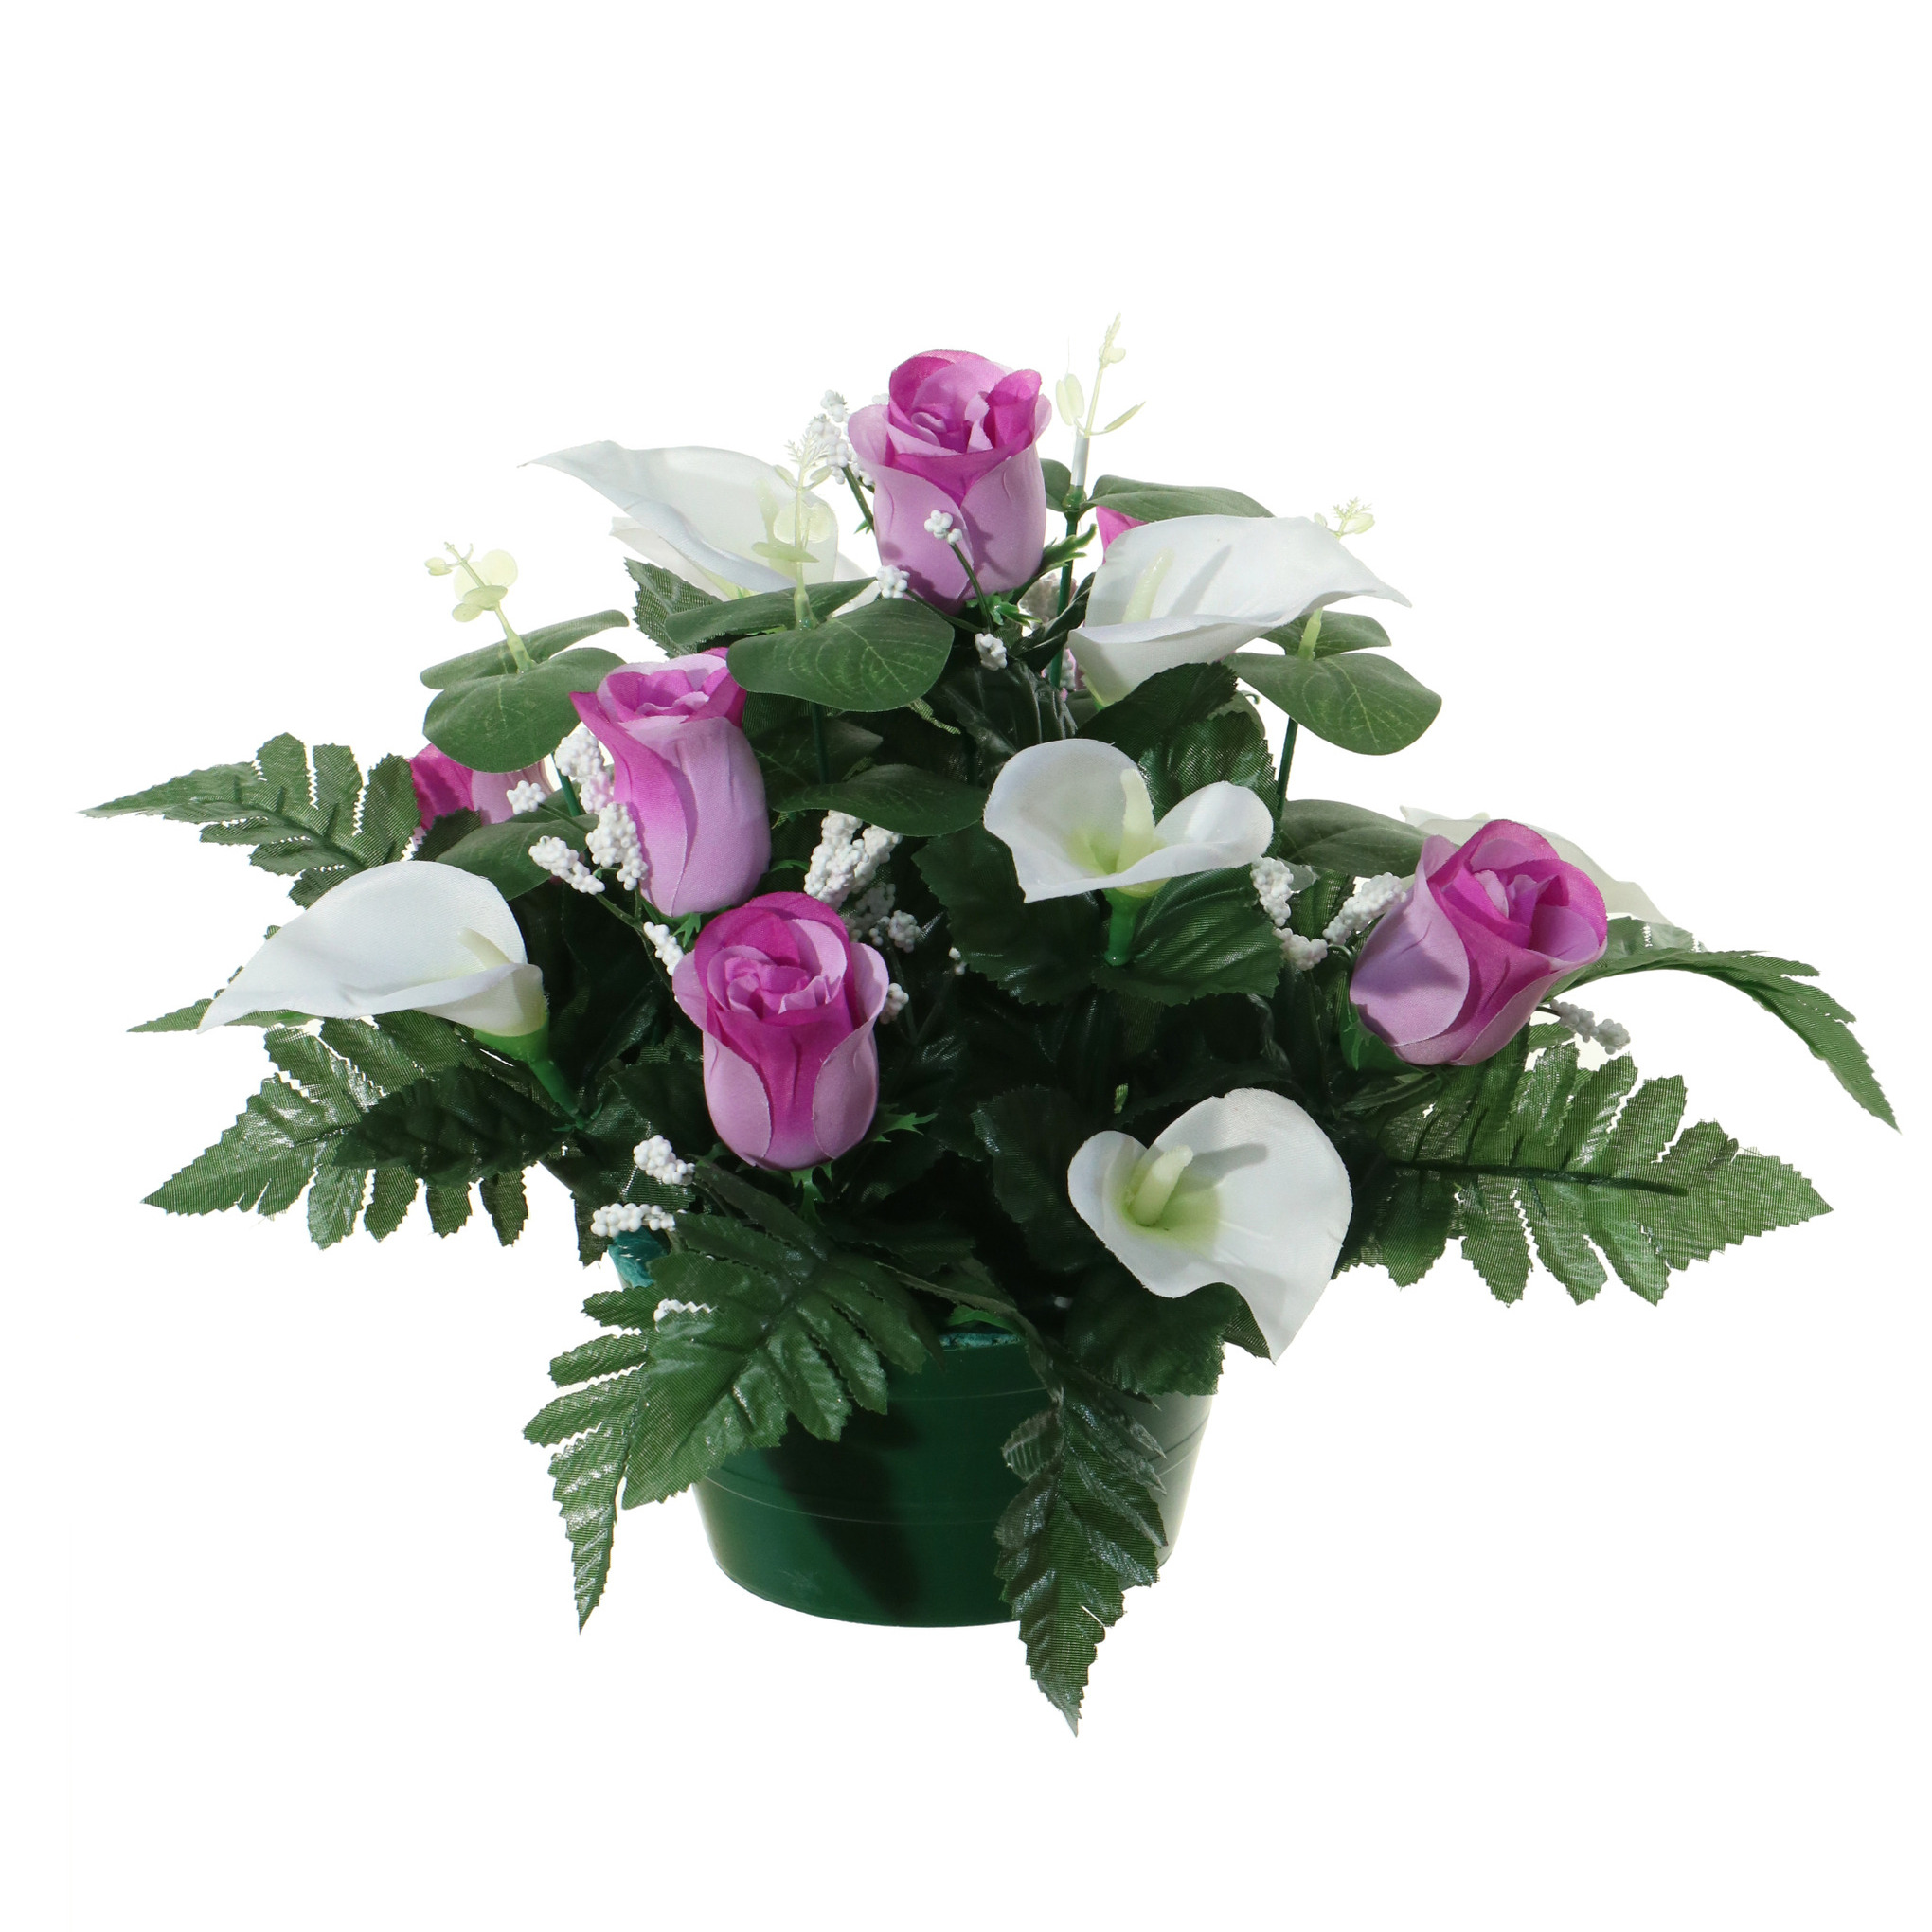 Kunstbloemen plantje in pot - wit/paars - 26 cm - Bloemstuk ornament - met bladgroen